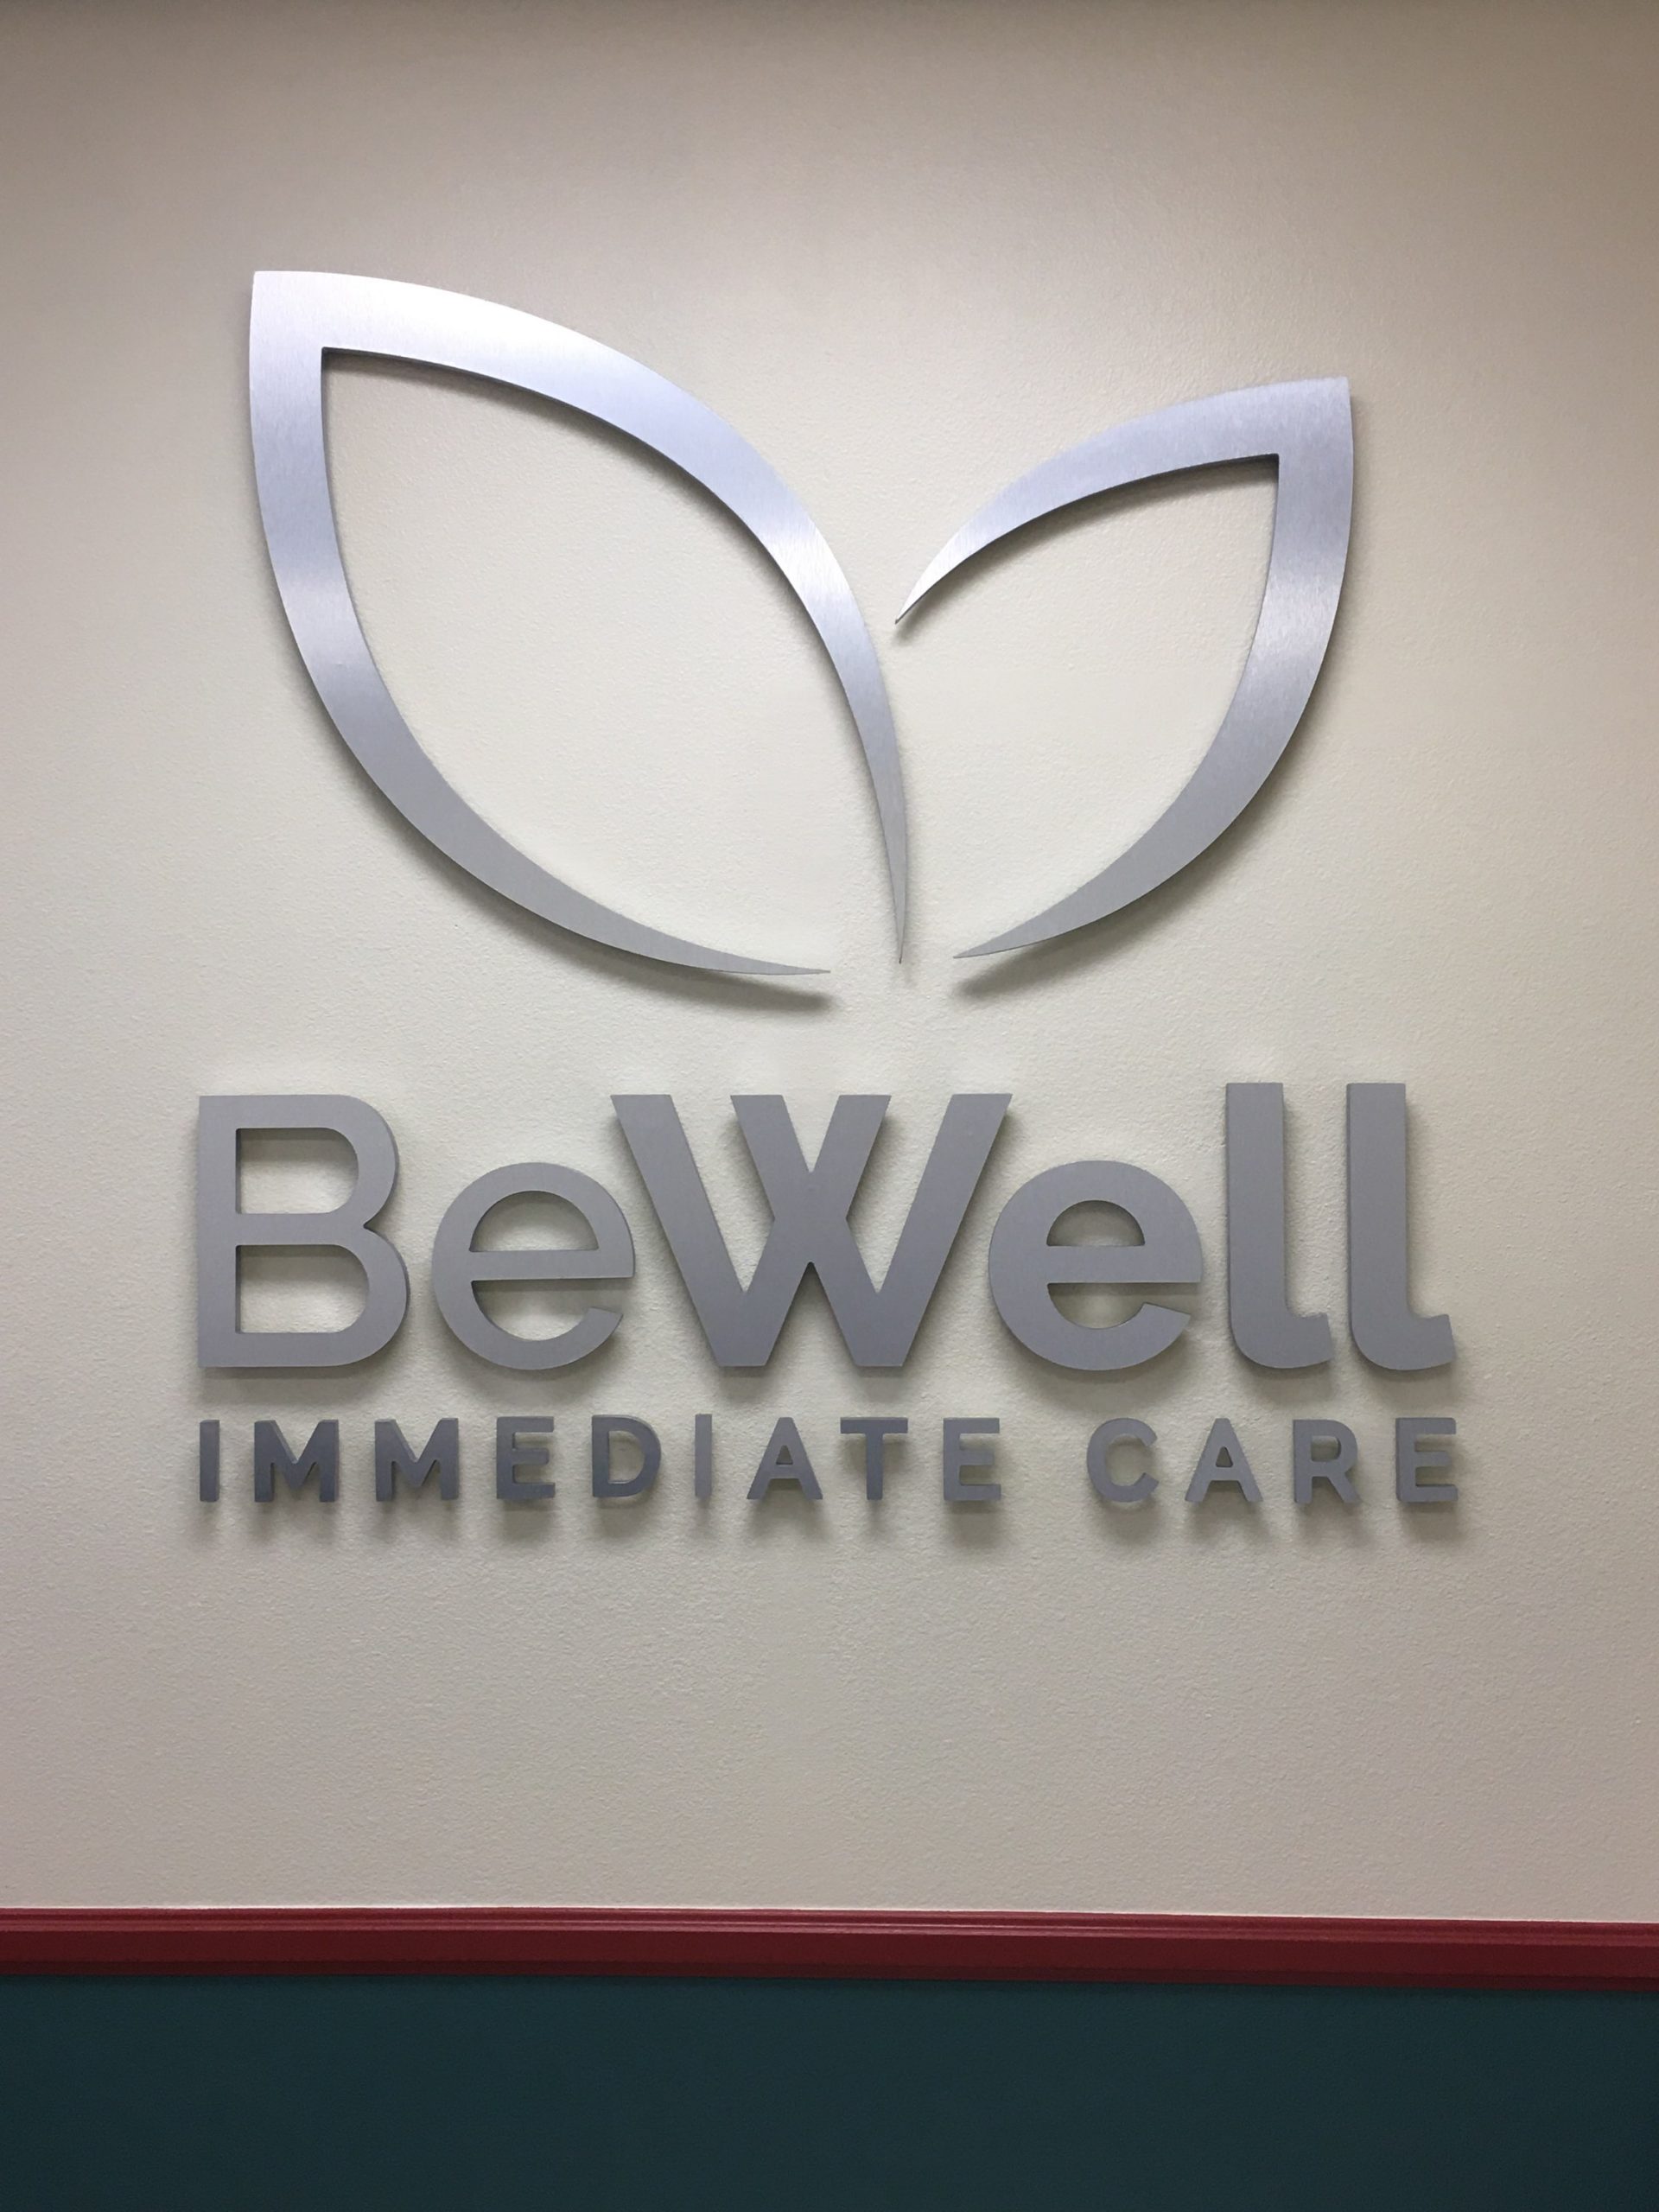 BeWell Immediate Care